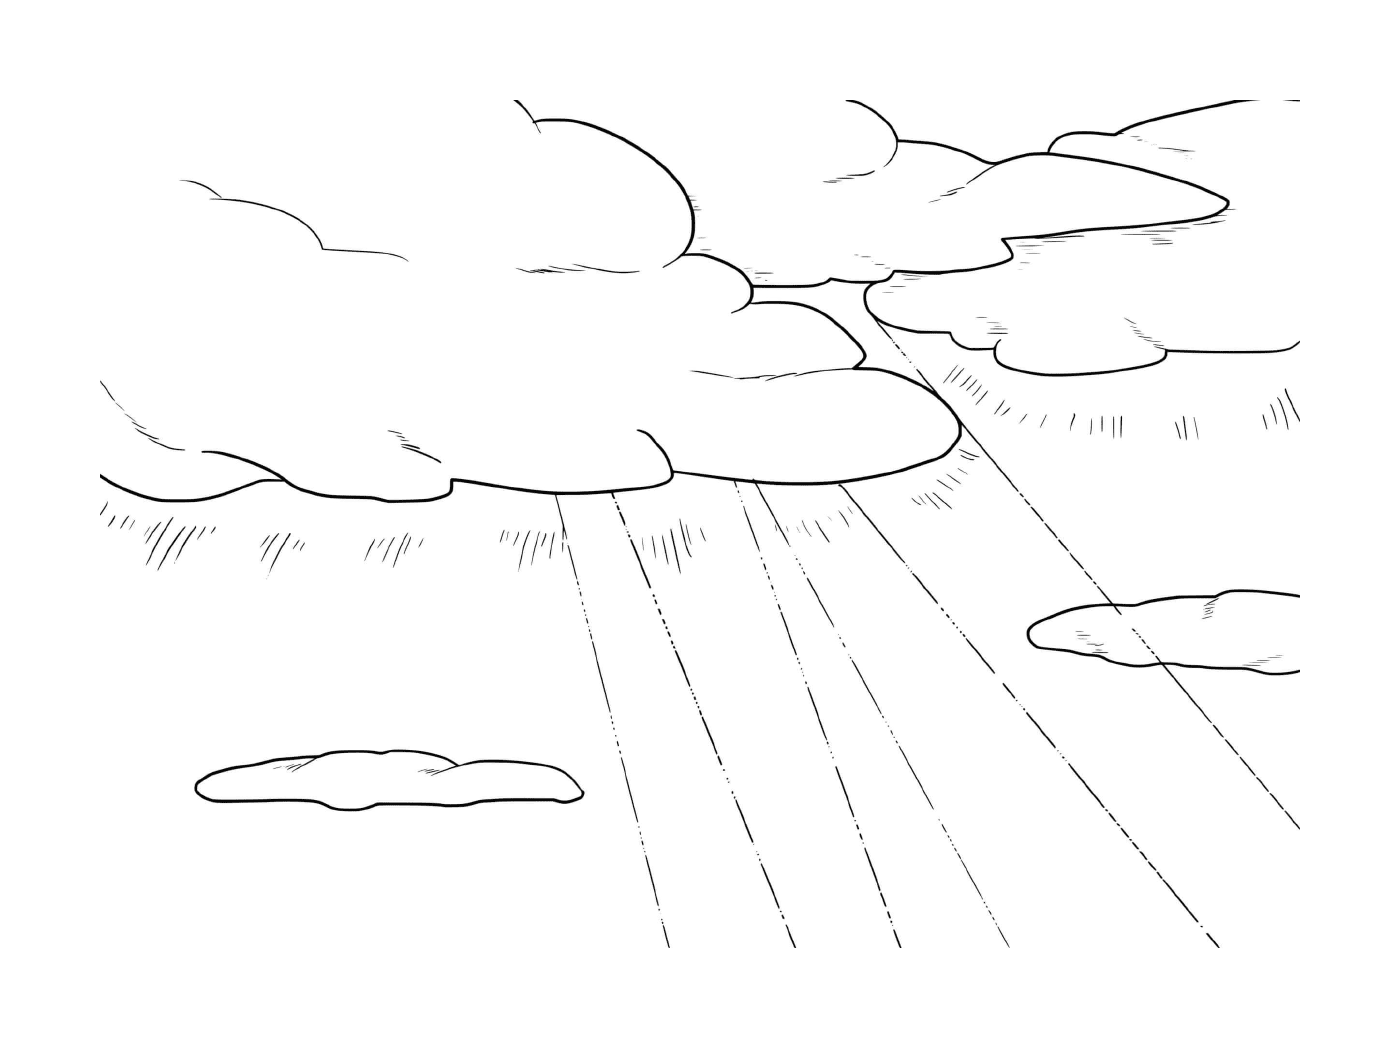  Verklärung, Linie und Himmel mit Wolken 